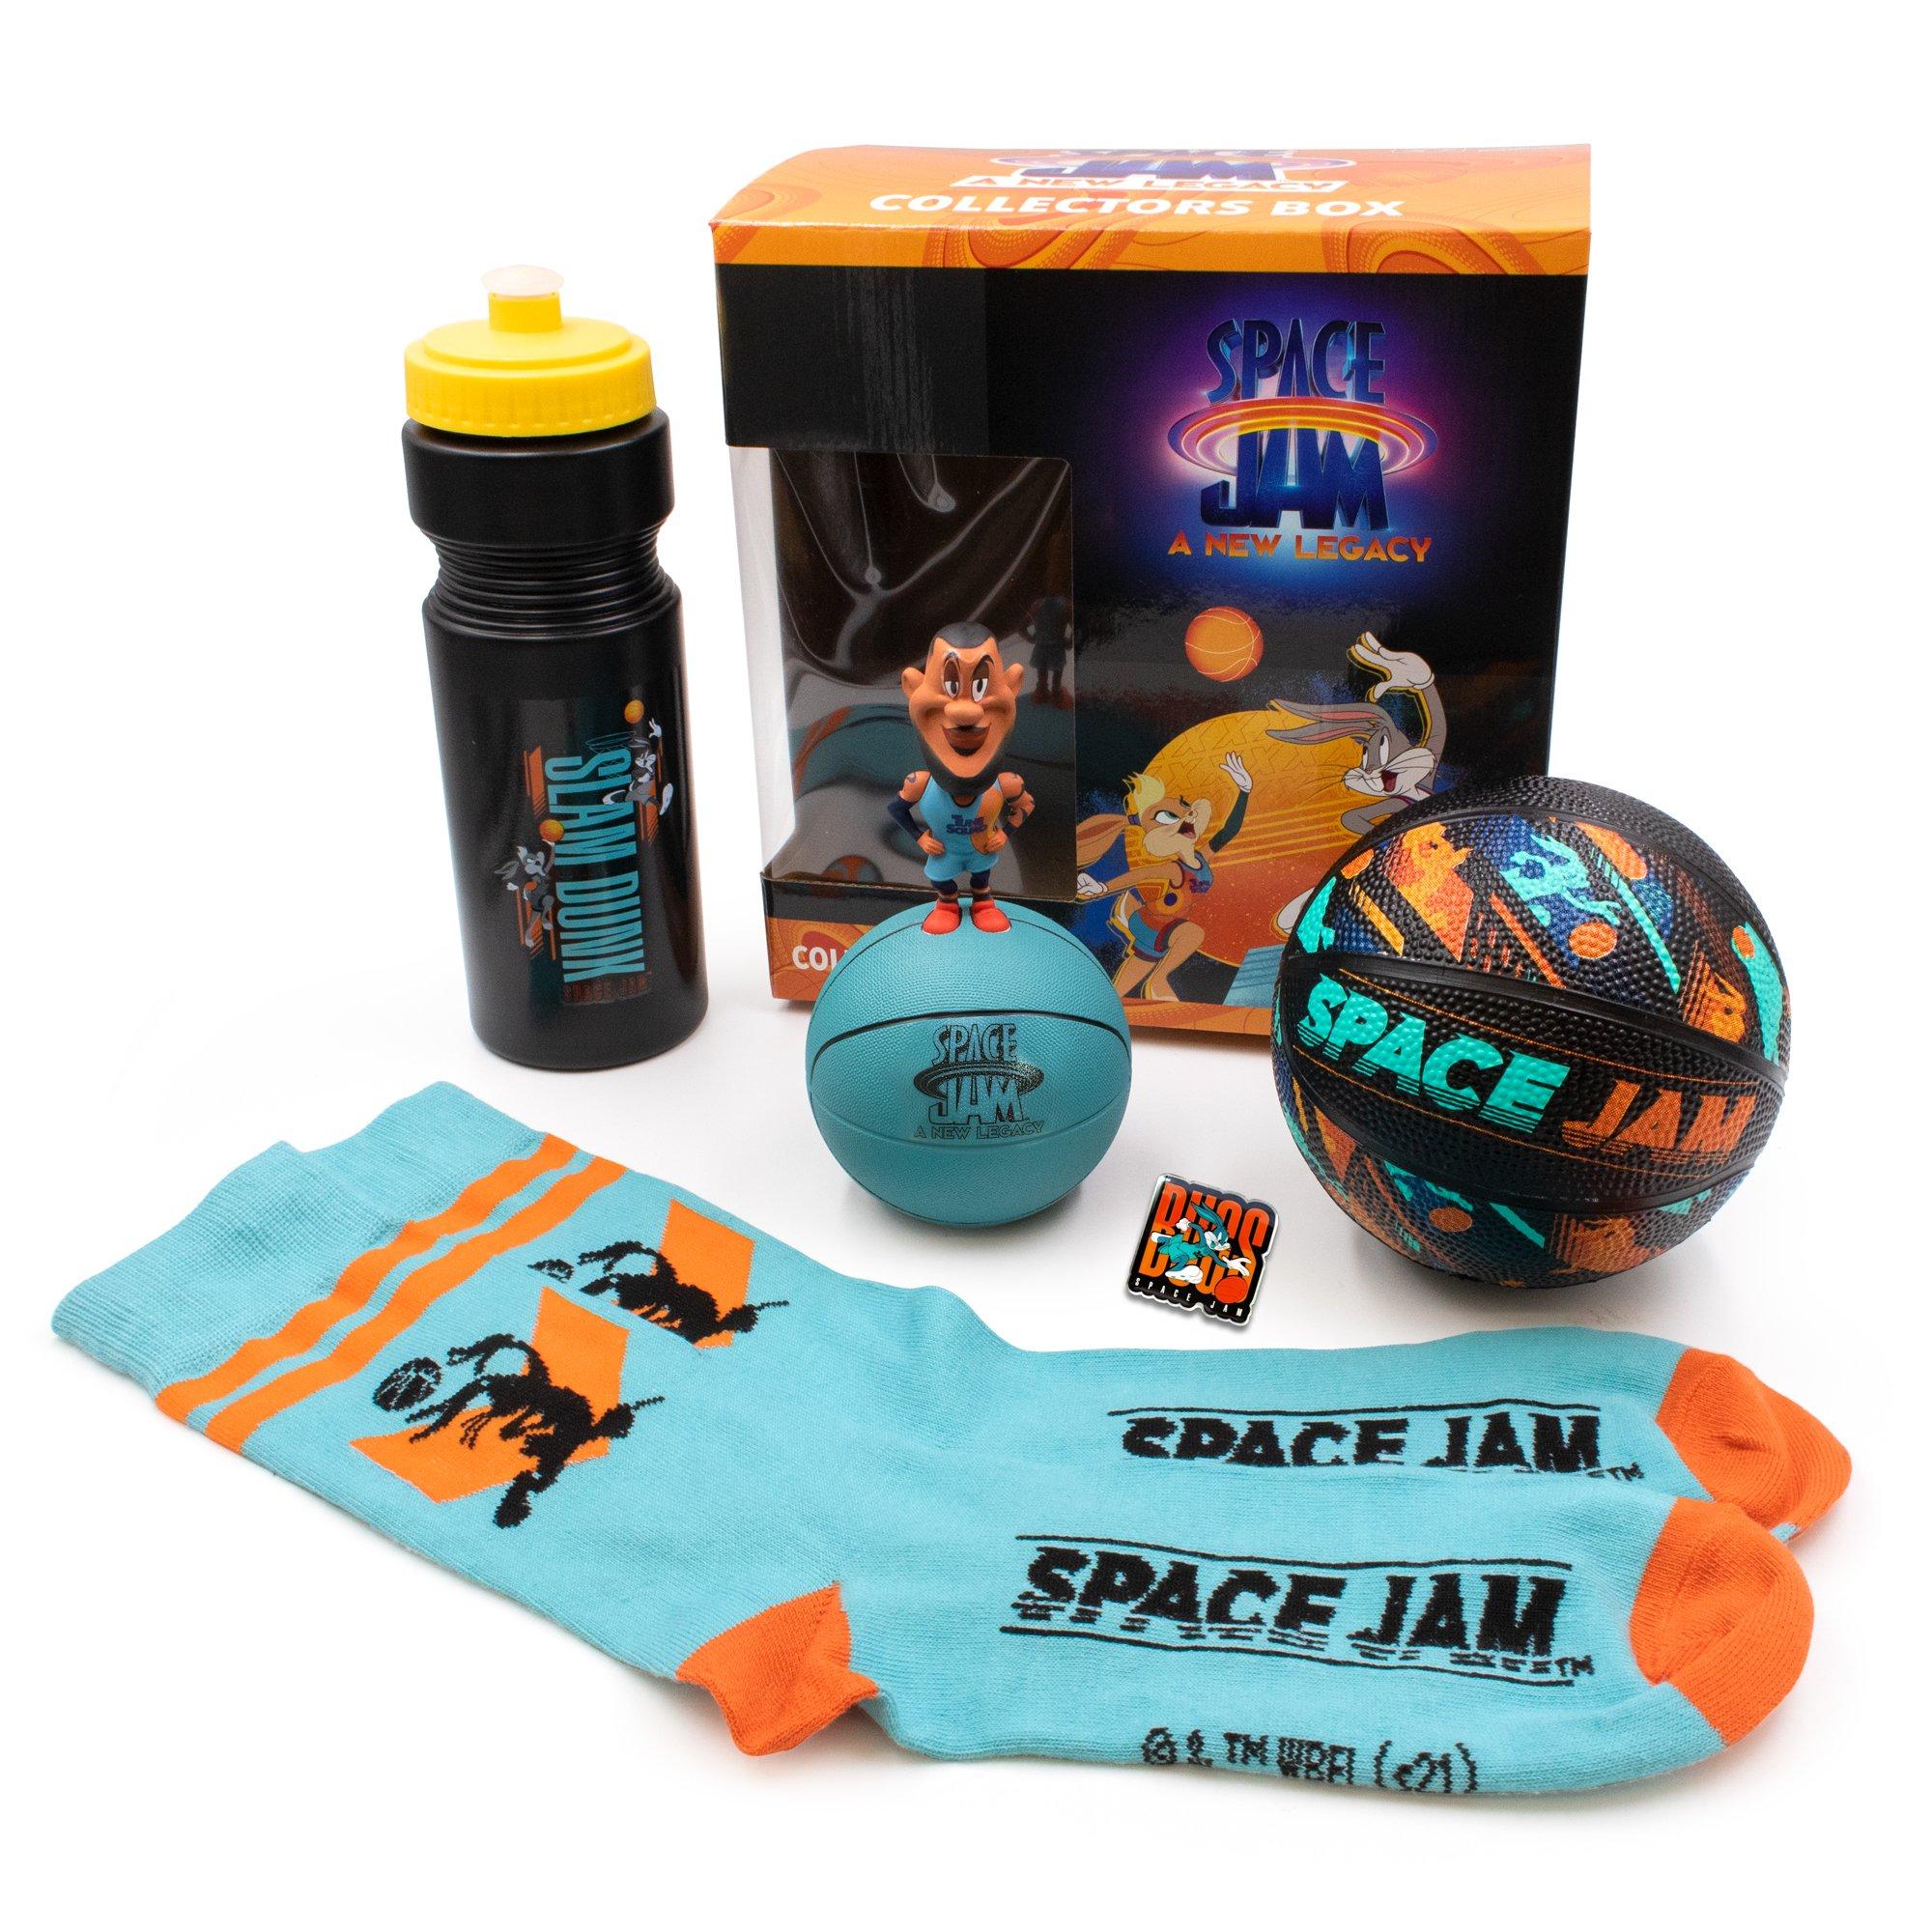 https://media.gamestop.com/i/gamestop/11113203/CultureFly-Space-Jam-A-New-Legacy-Collectors-Box?$pdp$